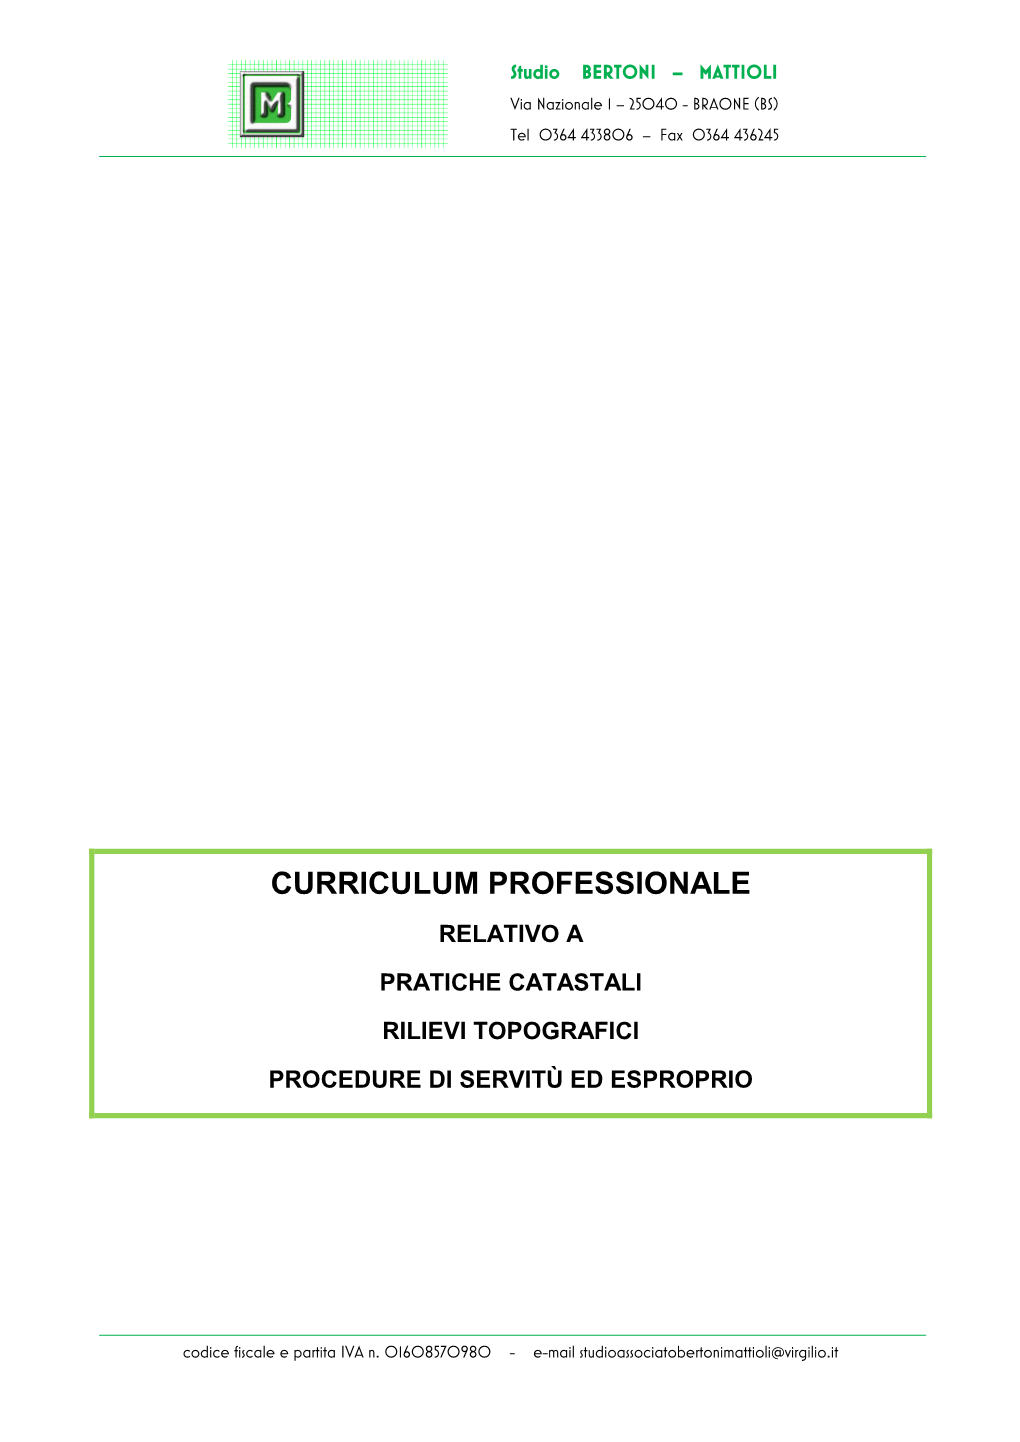 Curriculum Professionale E Informazioni Generali